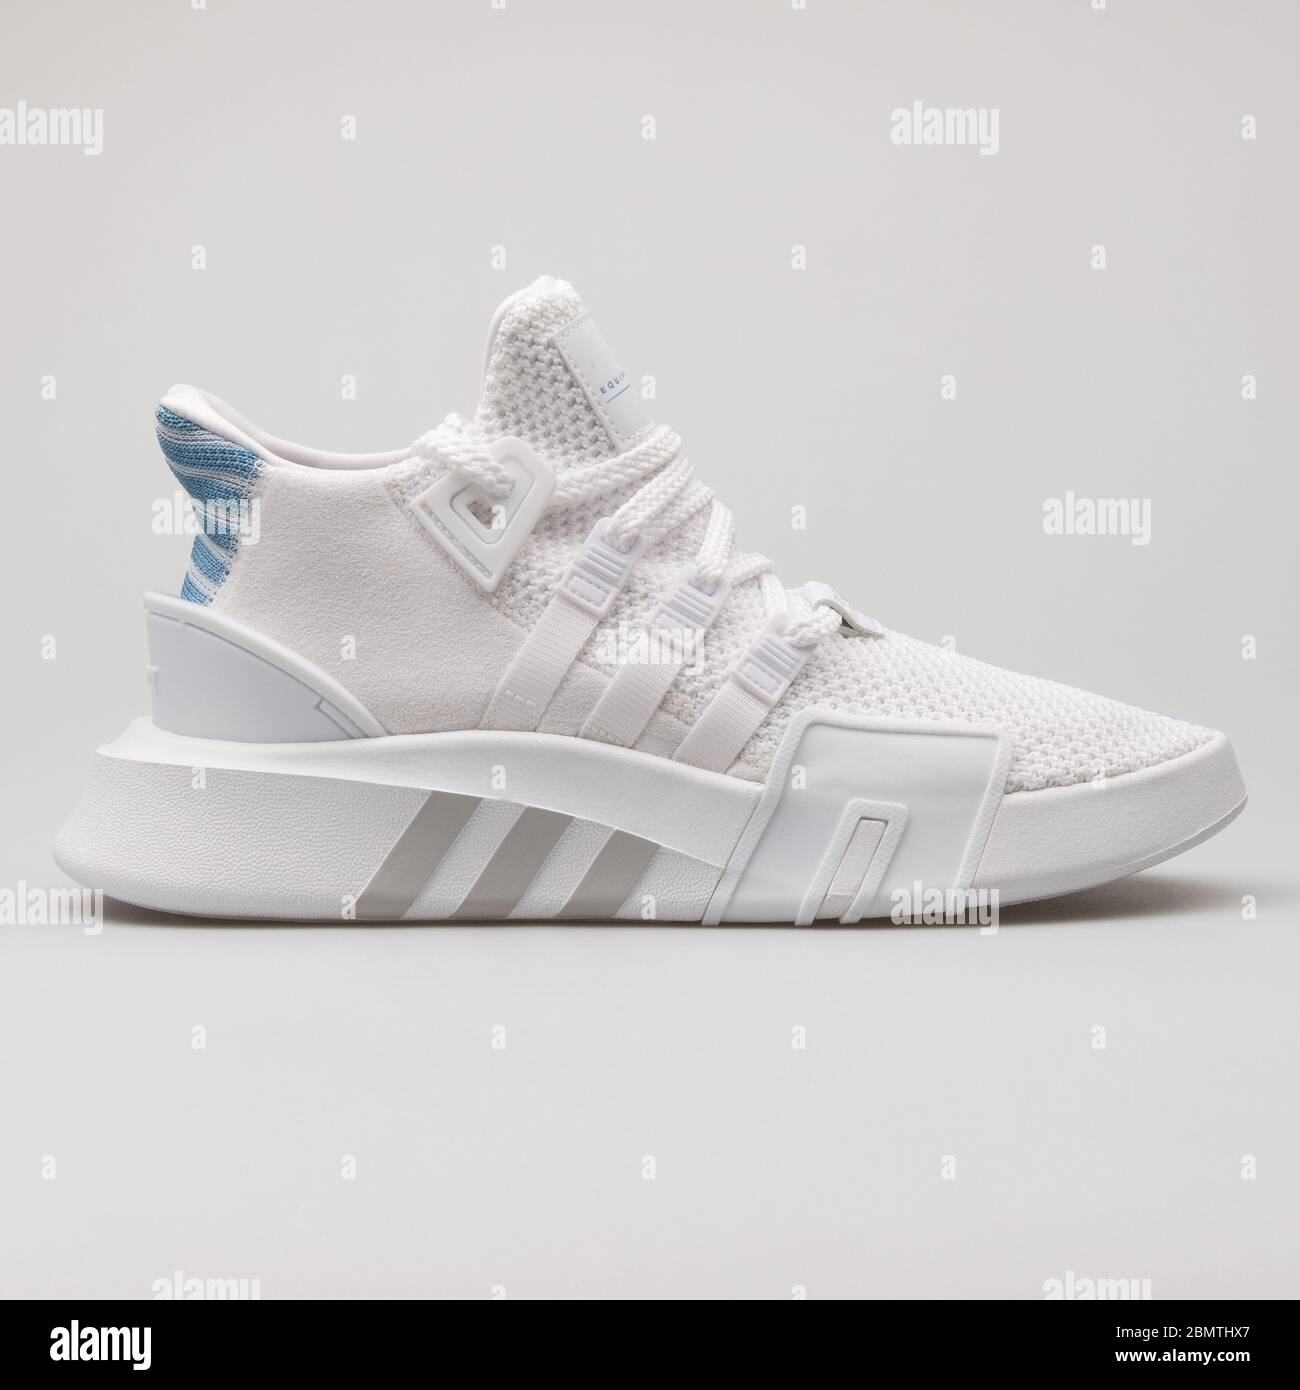 VIENA, AUSTRIA - 14 DE FEBRERO de 2018: Adidas EQT bask ADV blanco sneakers  sobre fondo blanco Fotografía de stock - Alamy